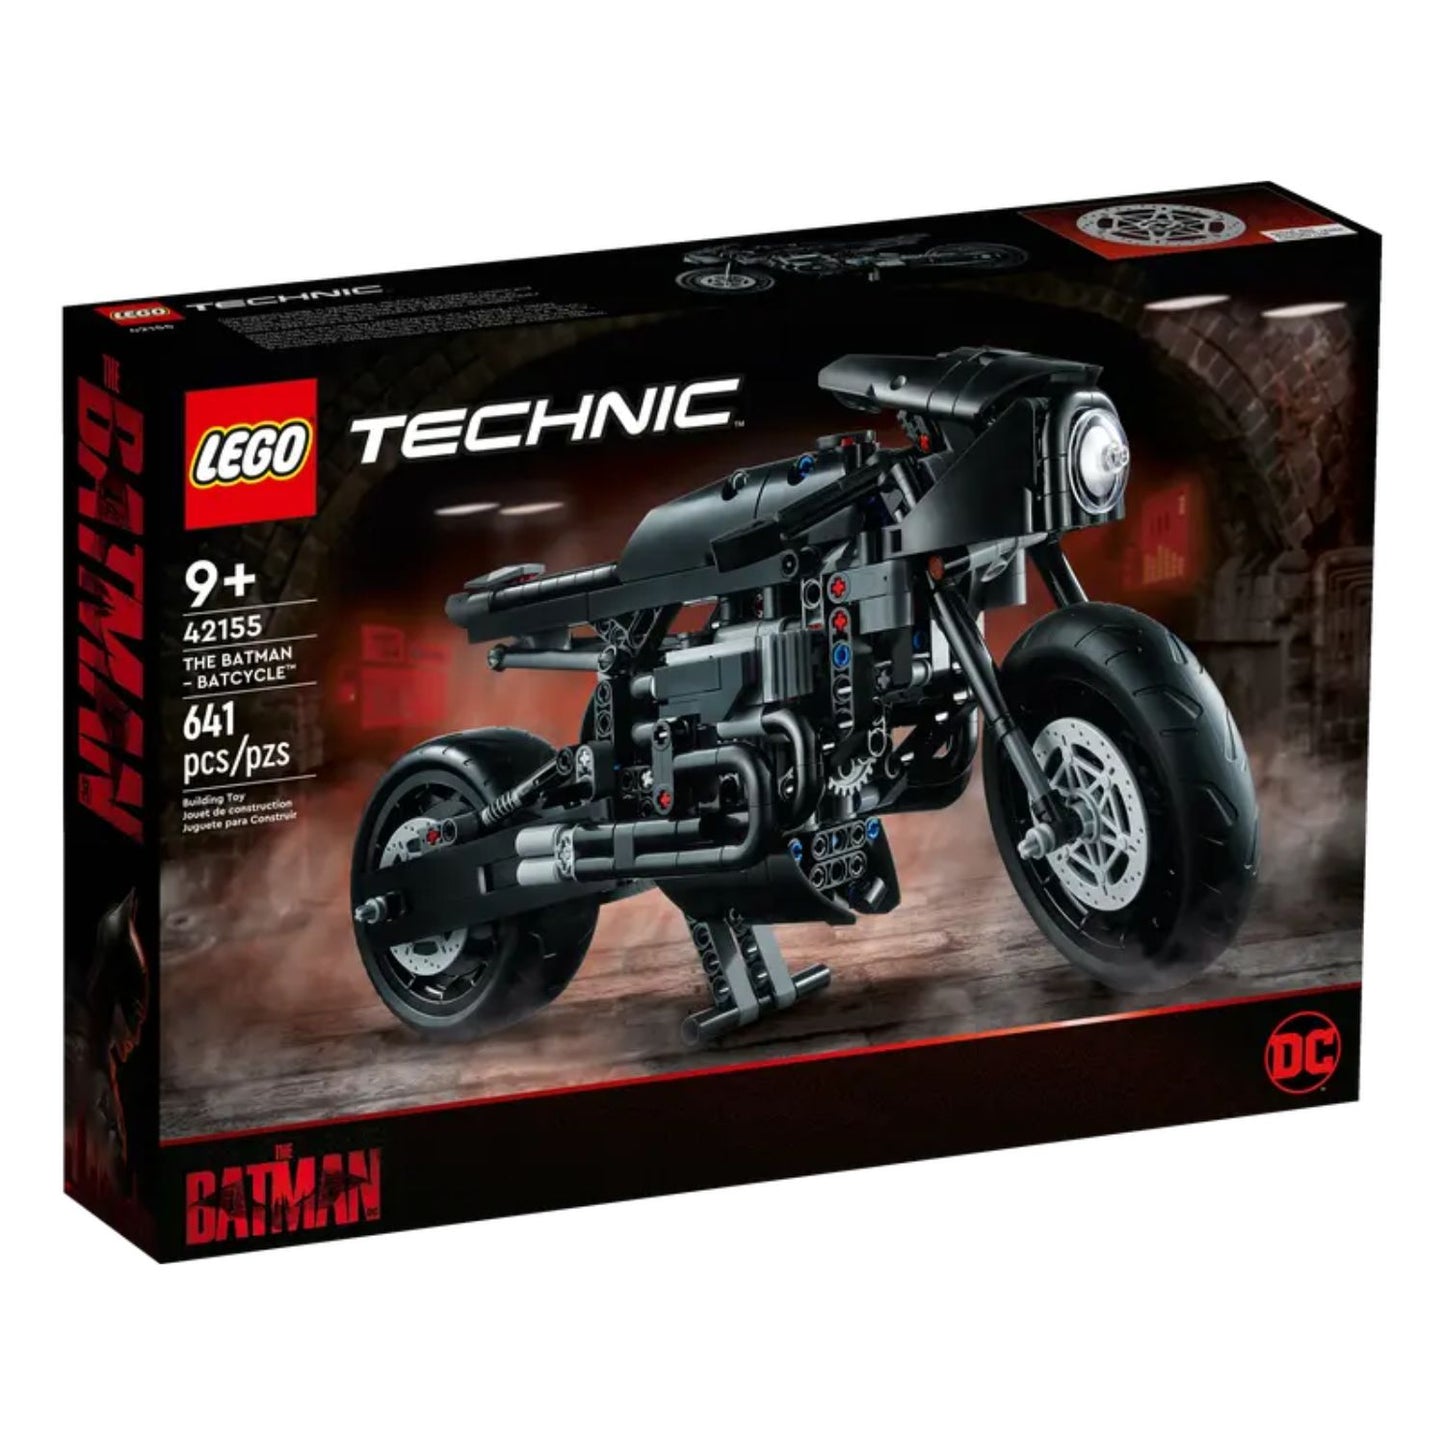 LEGO Technic - THE BATMAN BATCYCLE 42155